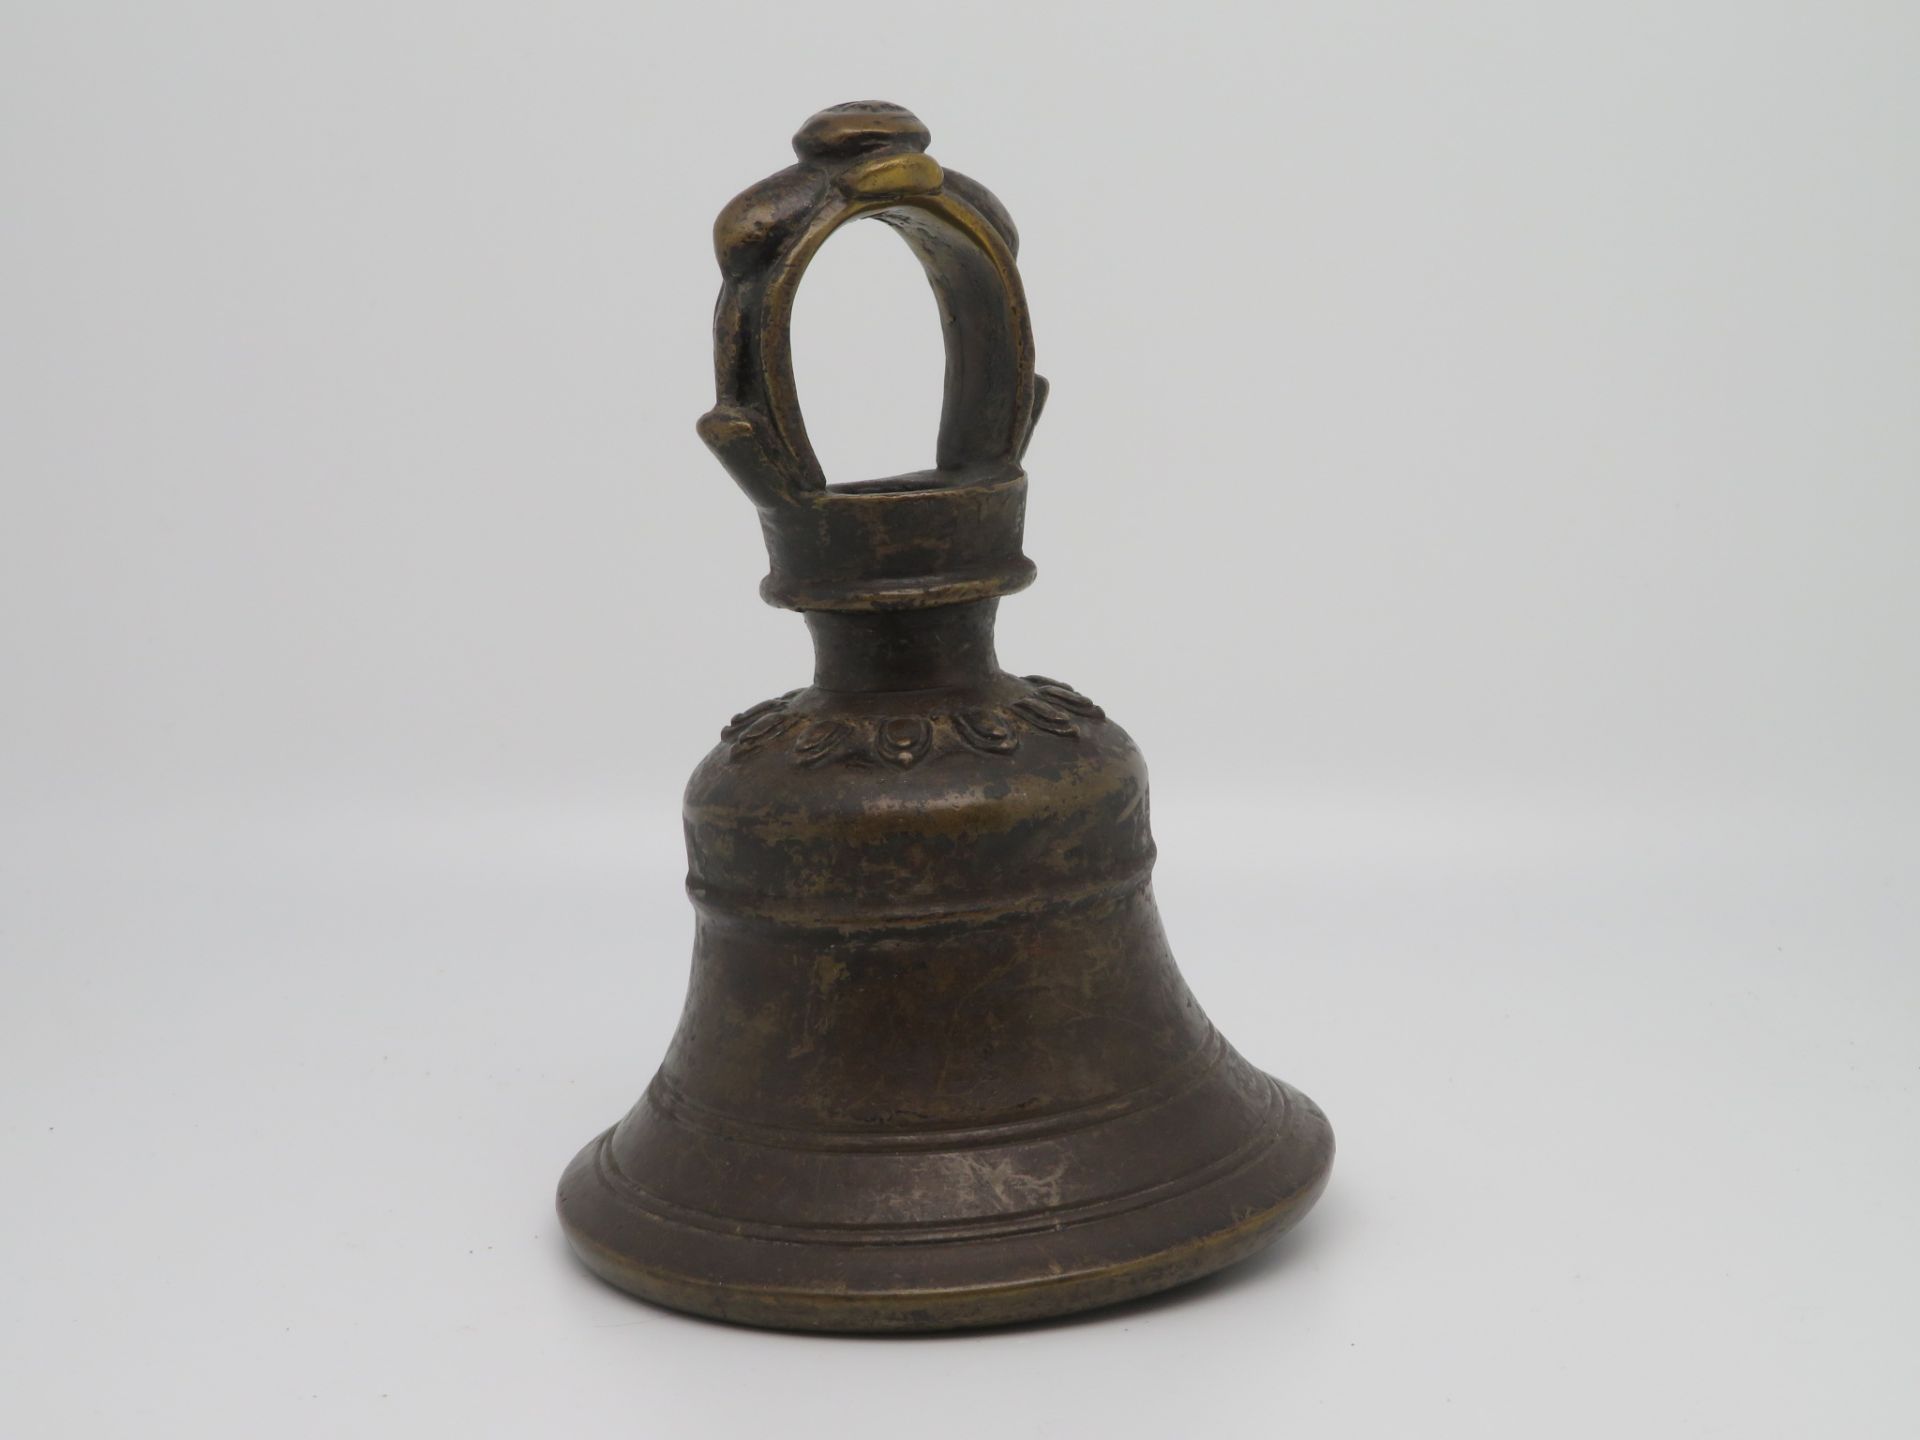 Antike Glocke, wohl Tibet/Nepal, Bronze, h 15 cm, d 11 cm.